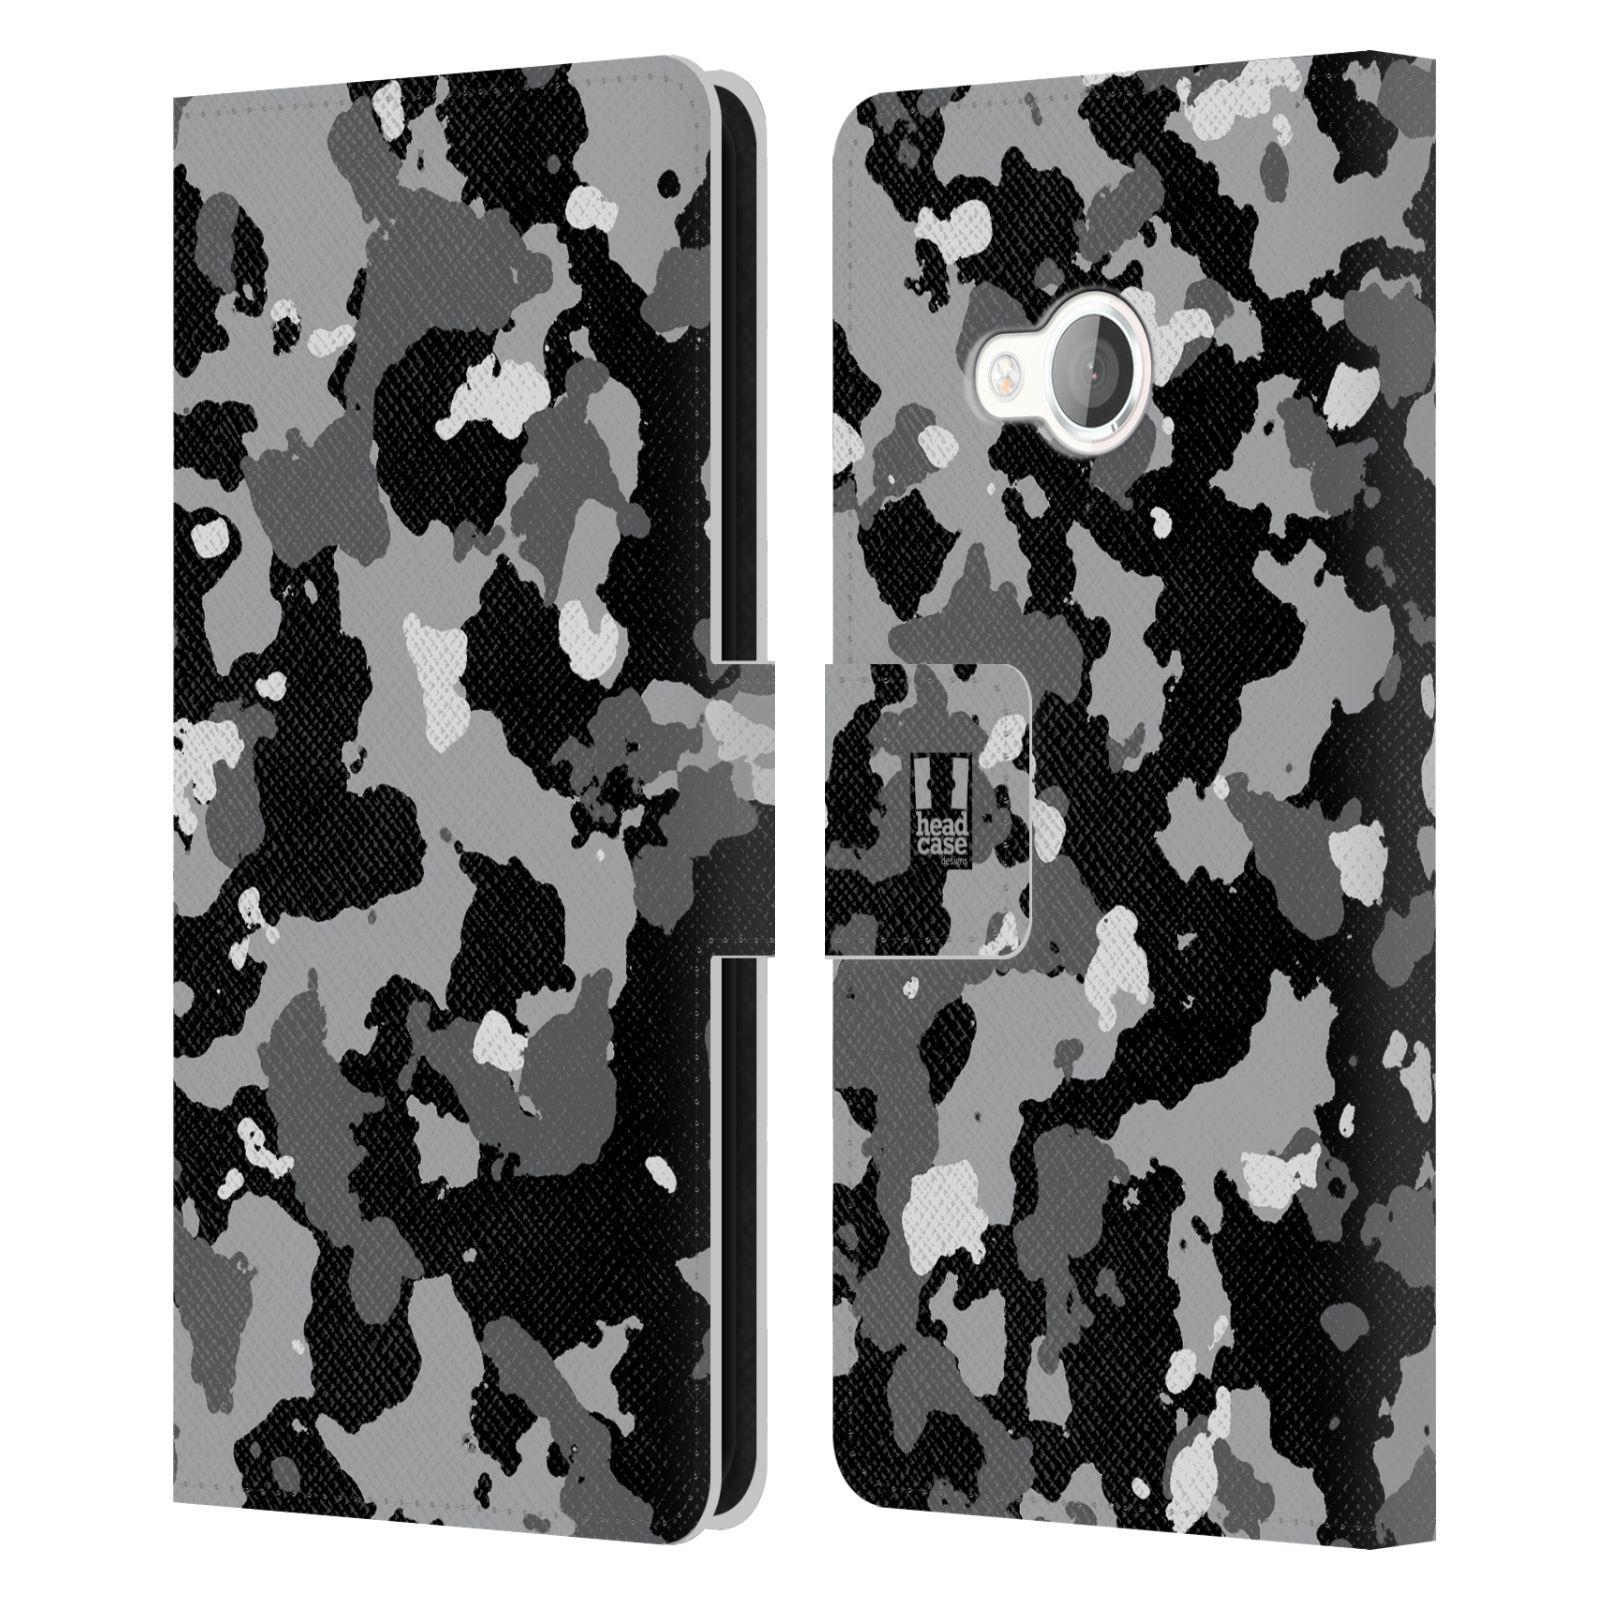 Pouzdro na mobil HTC U Play - Head Case - kamuflaž černá a šedá